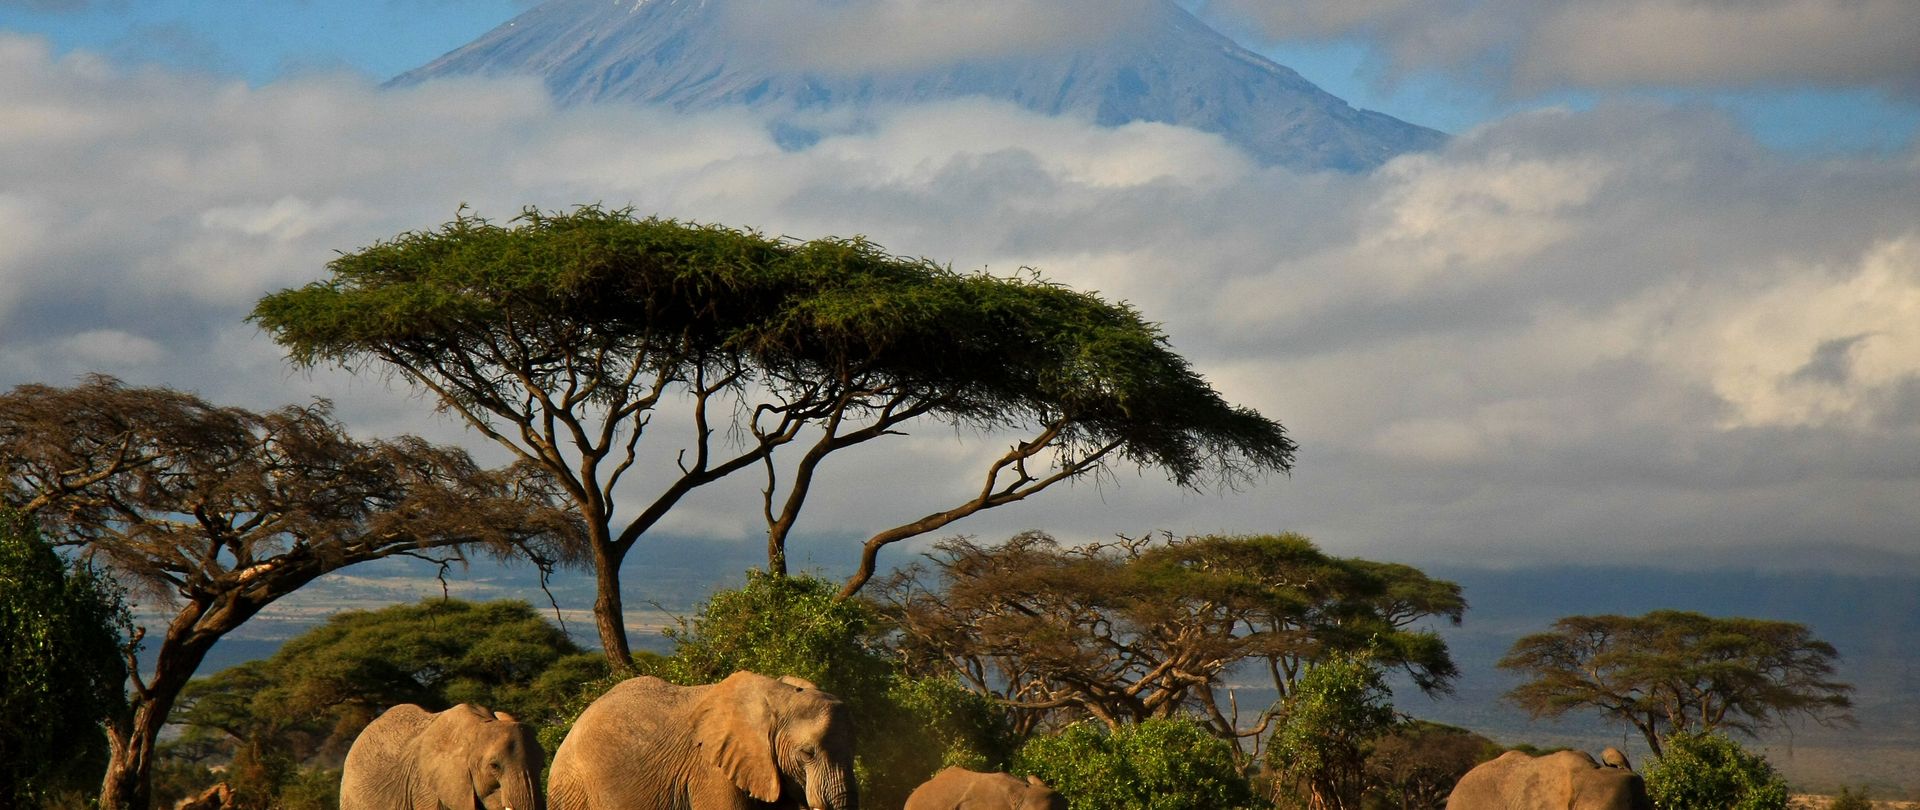 Safari express au Kenya dans les parcs de l'est